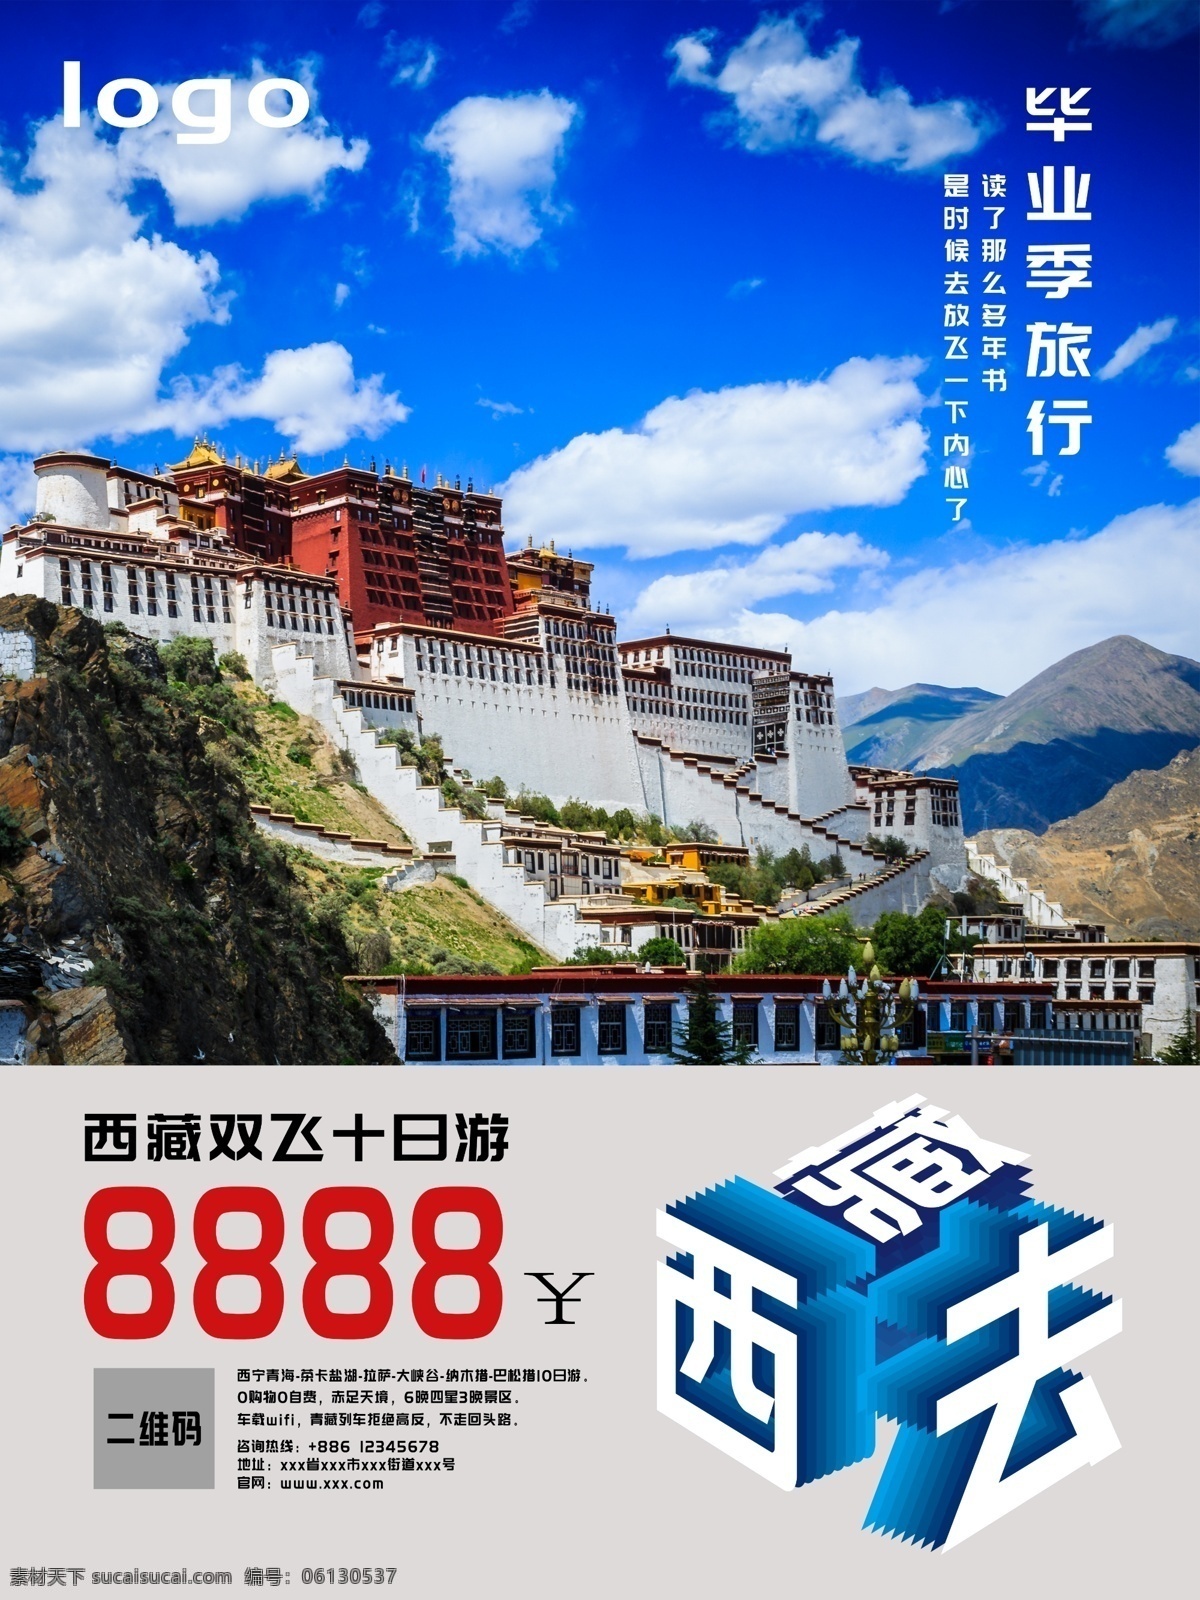 蓝色 西藏 双飞 毕业 季 旅行 海报 毕业旅行 西藏旅行 拉萨旅行 十日游 旅行团旅行